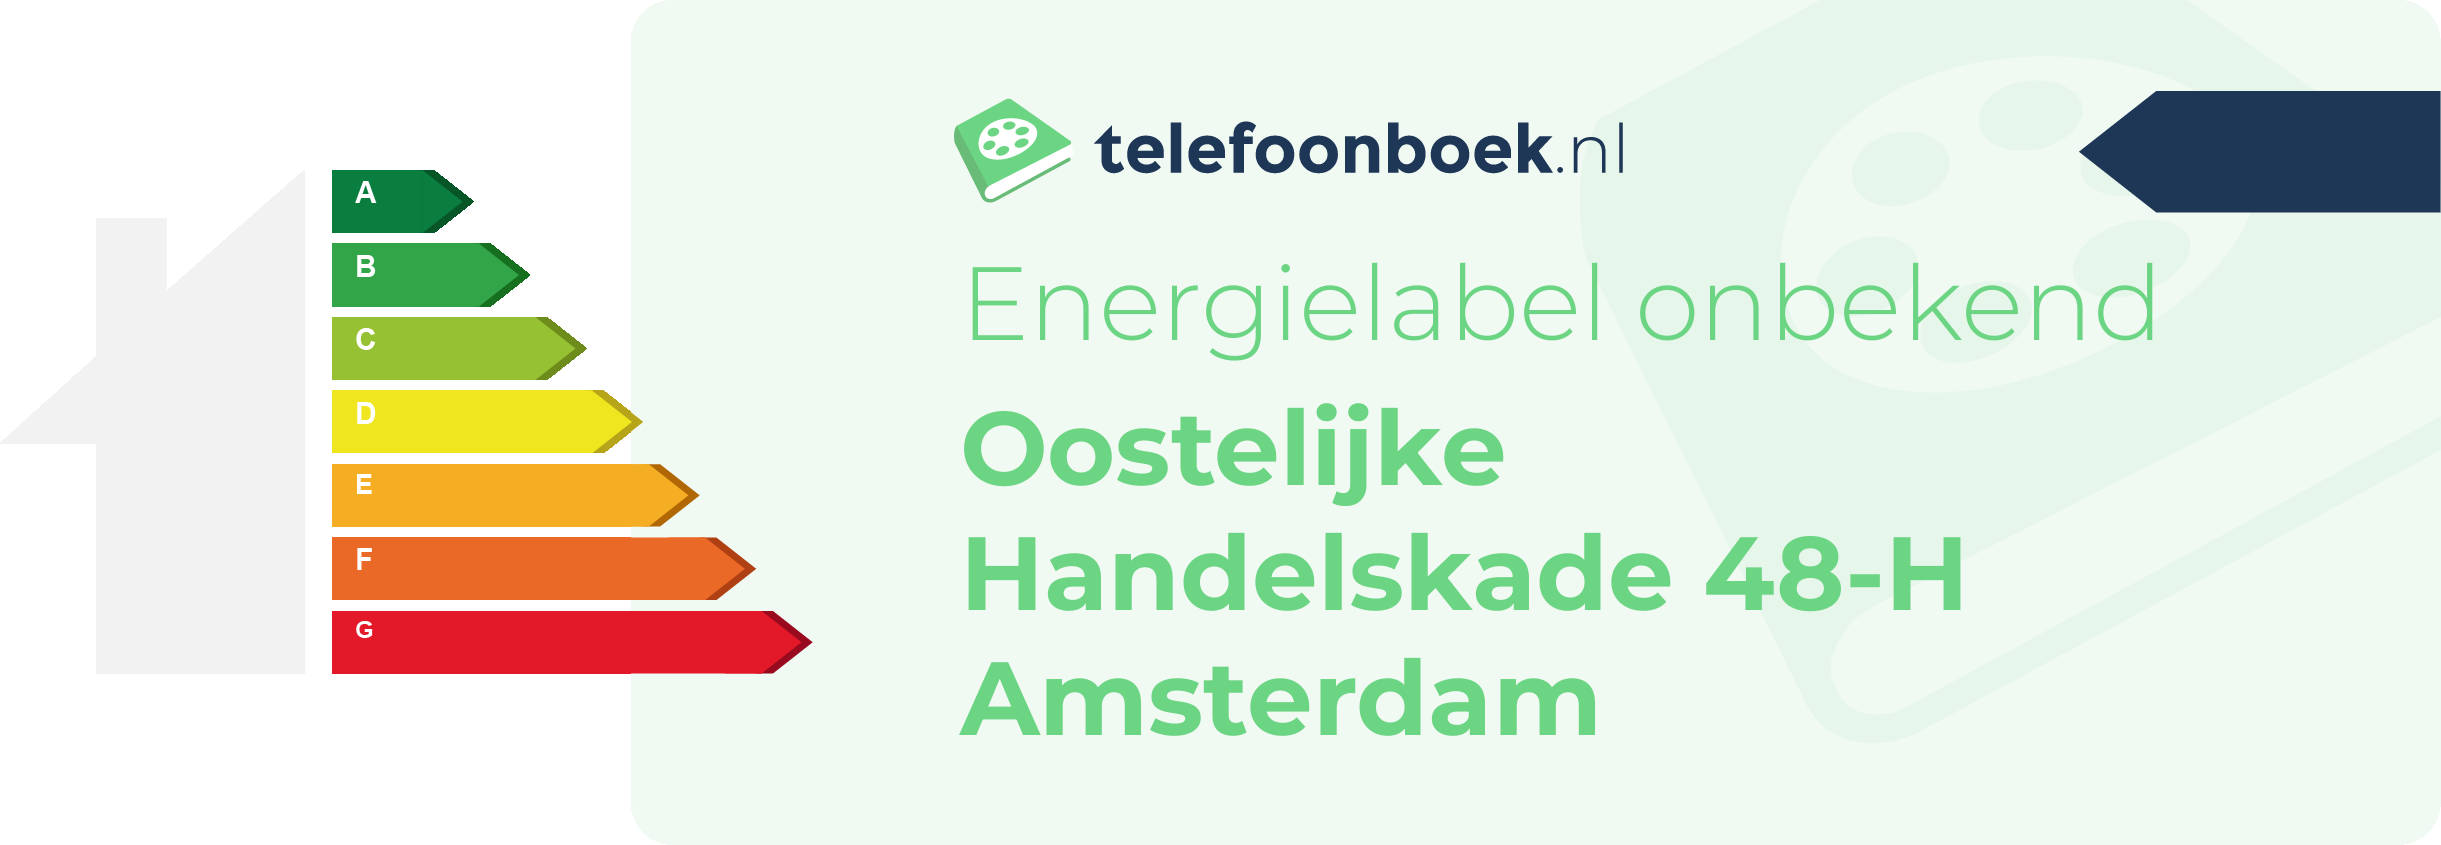 Energielabel Oostelijke Handelskade 48-H Amsterdam